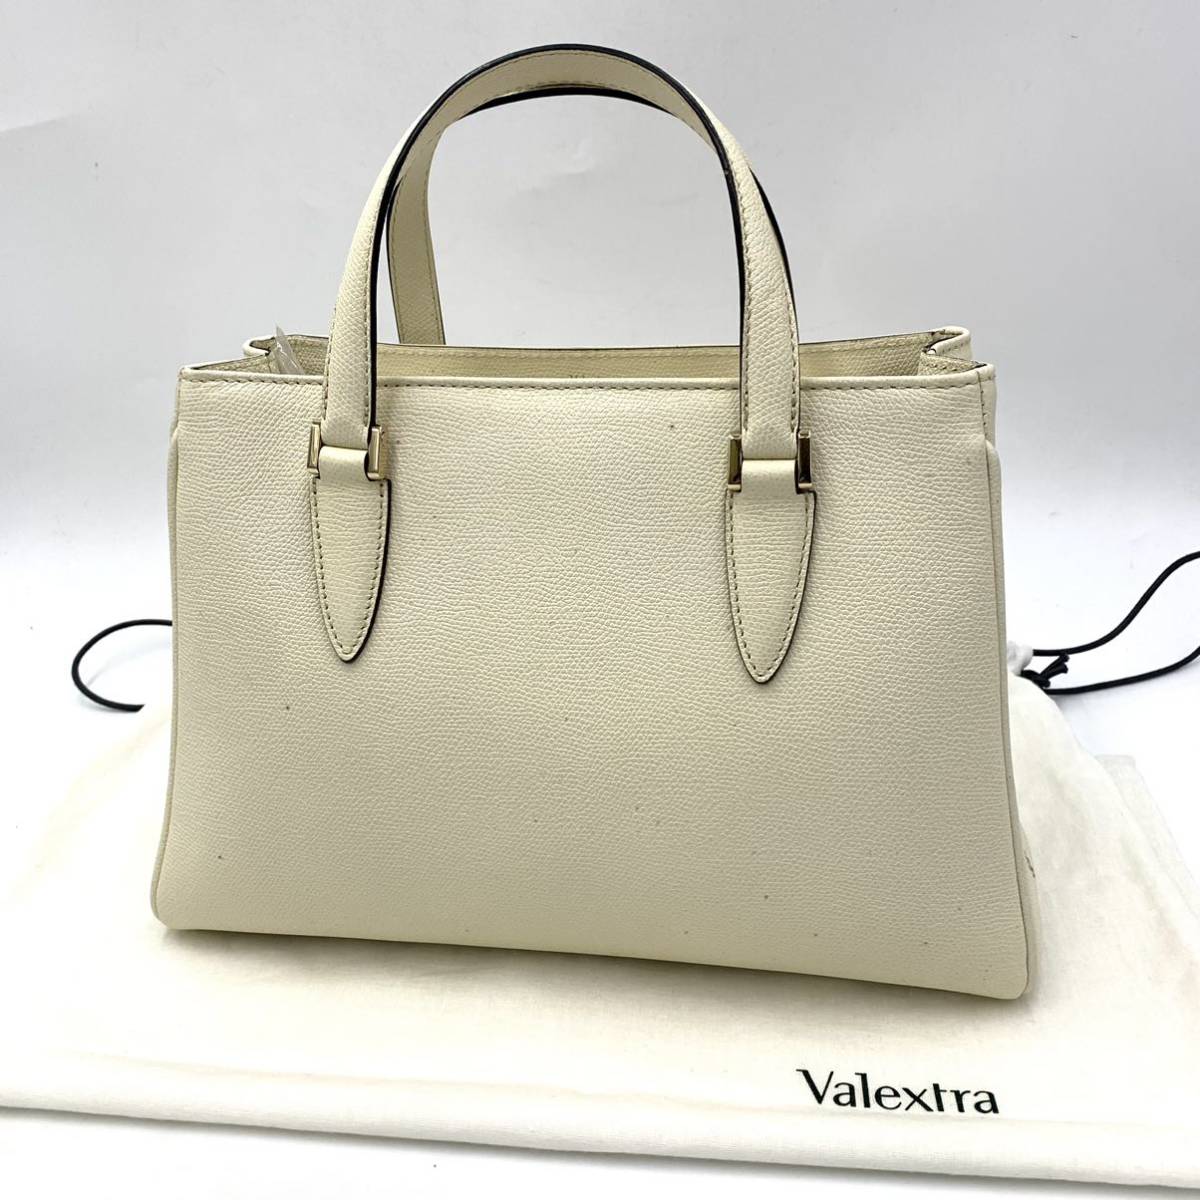 ☆ 至高の一品 'イタリア製' Valextra ヴァレクストラ N 377742 本革 レザー ハンドバッグ 手提げ トートバッグ アイボリー 高級婦人鞄